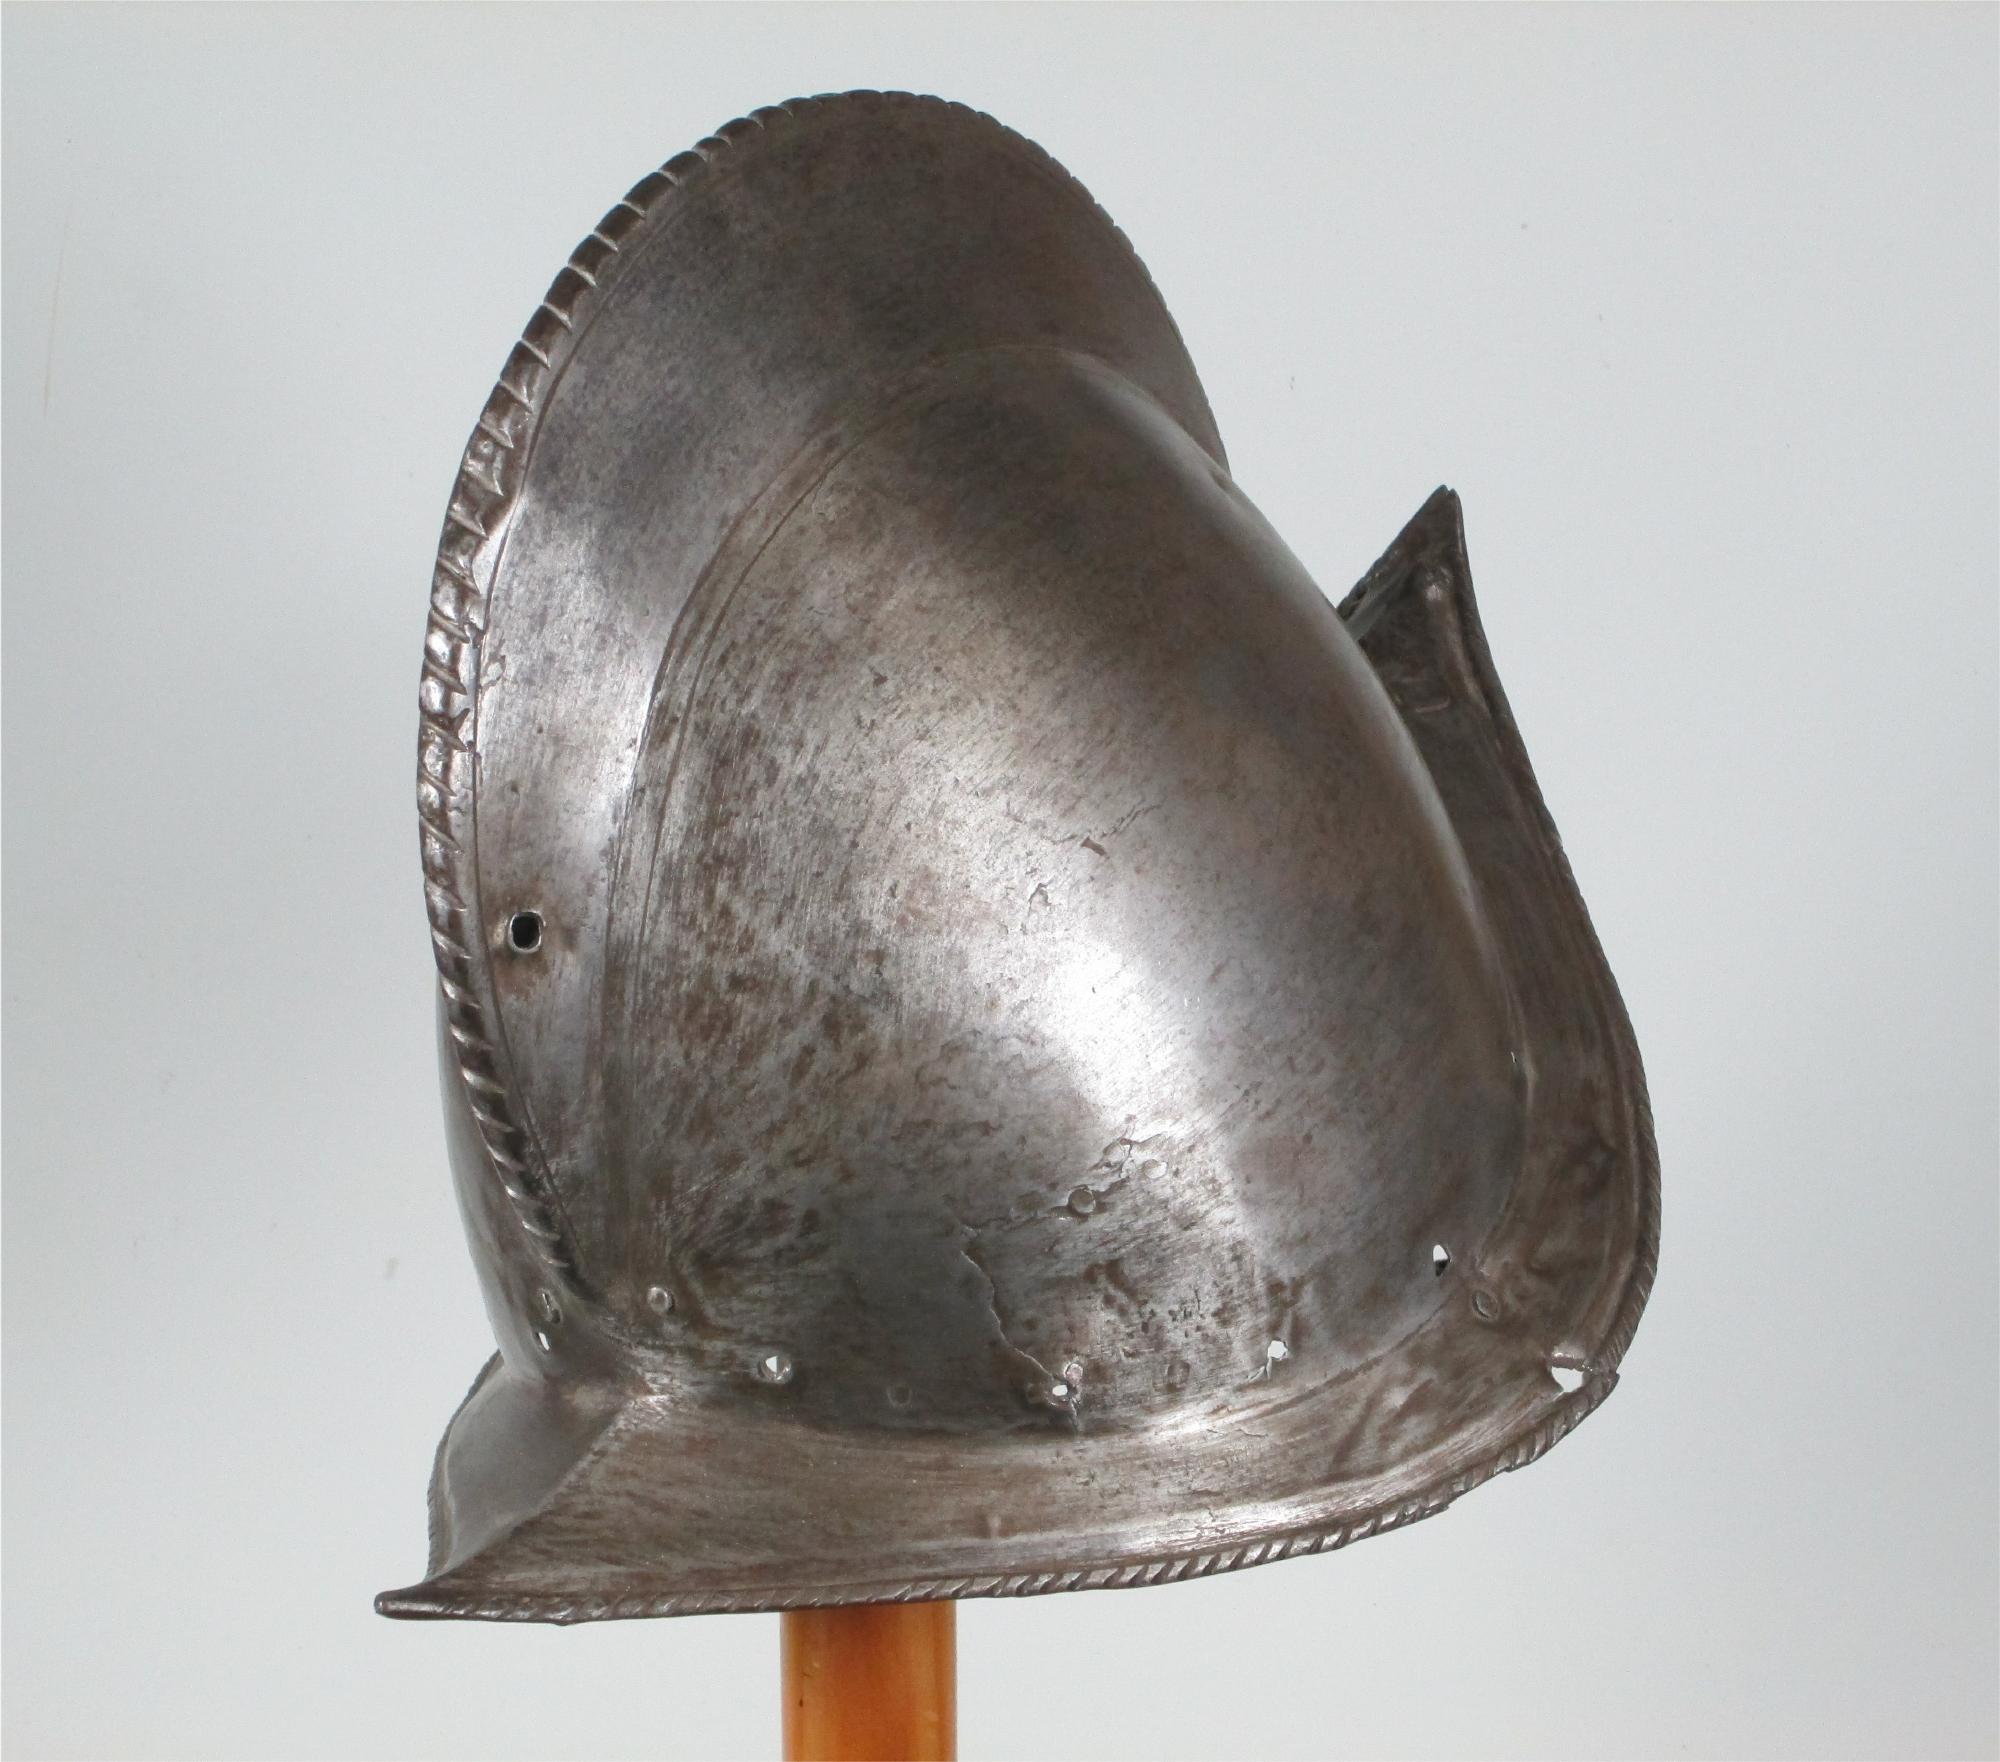 Original 16th c. patch in armour